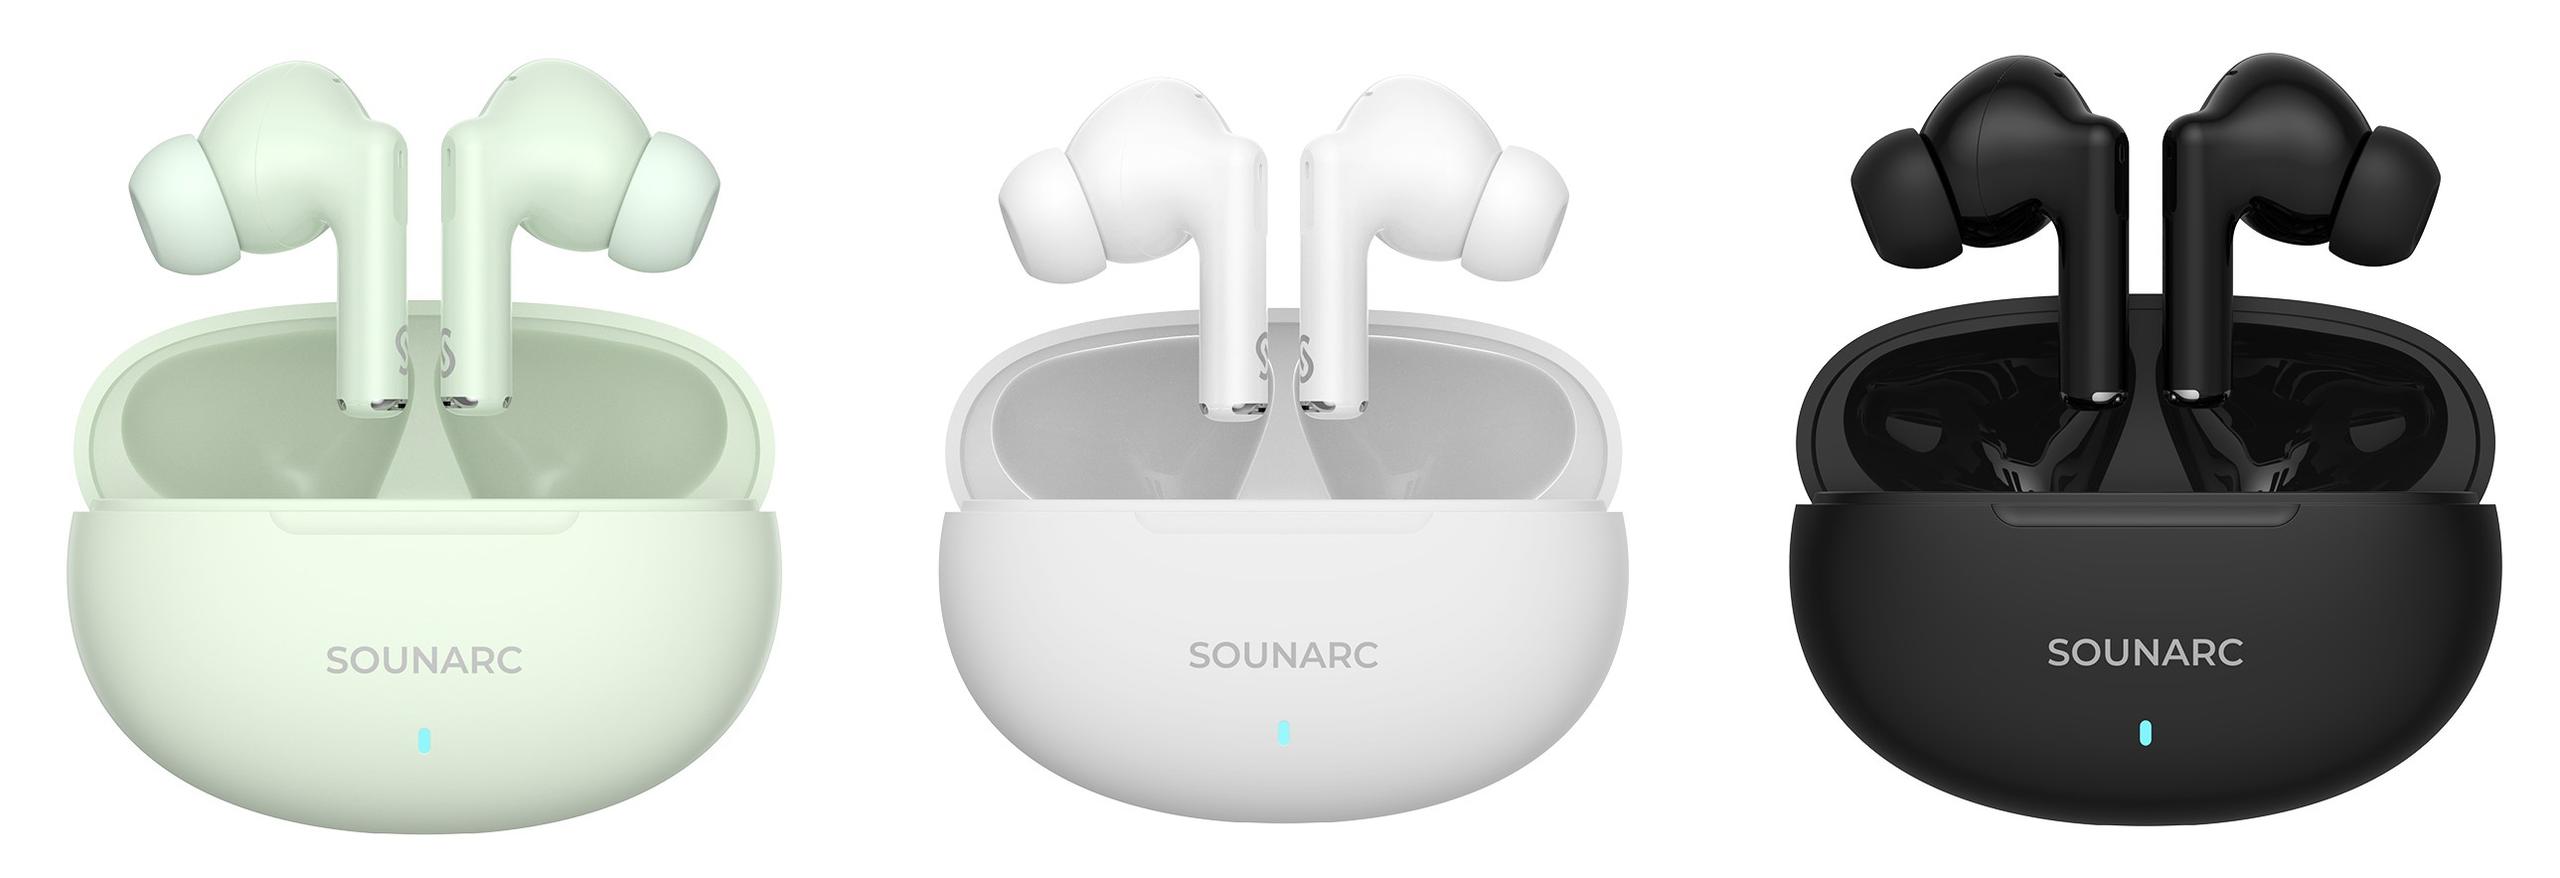 Sounarc Q1 Bluetooth Wireless Earbuds